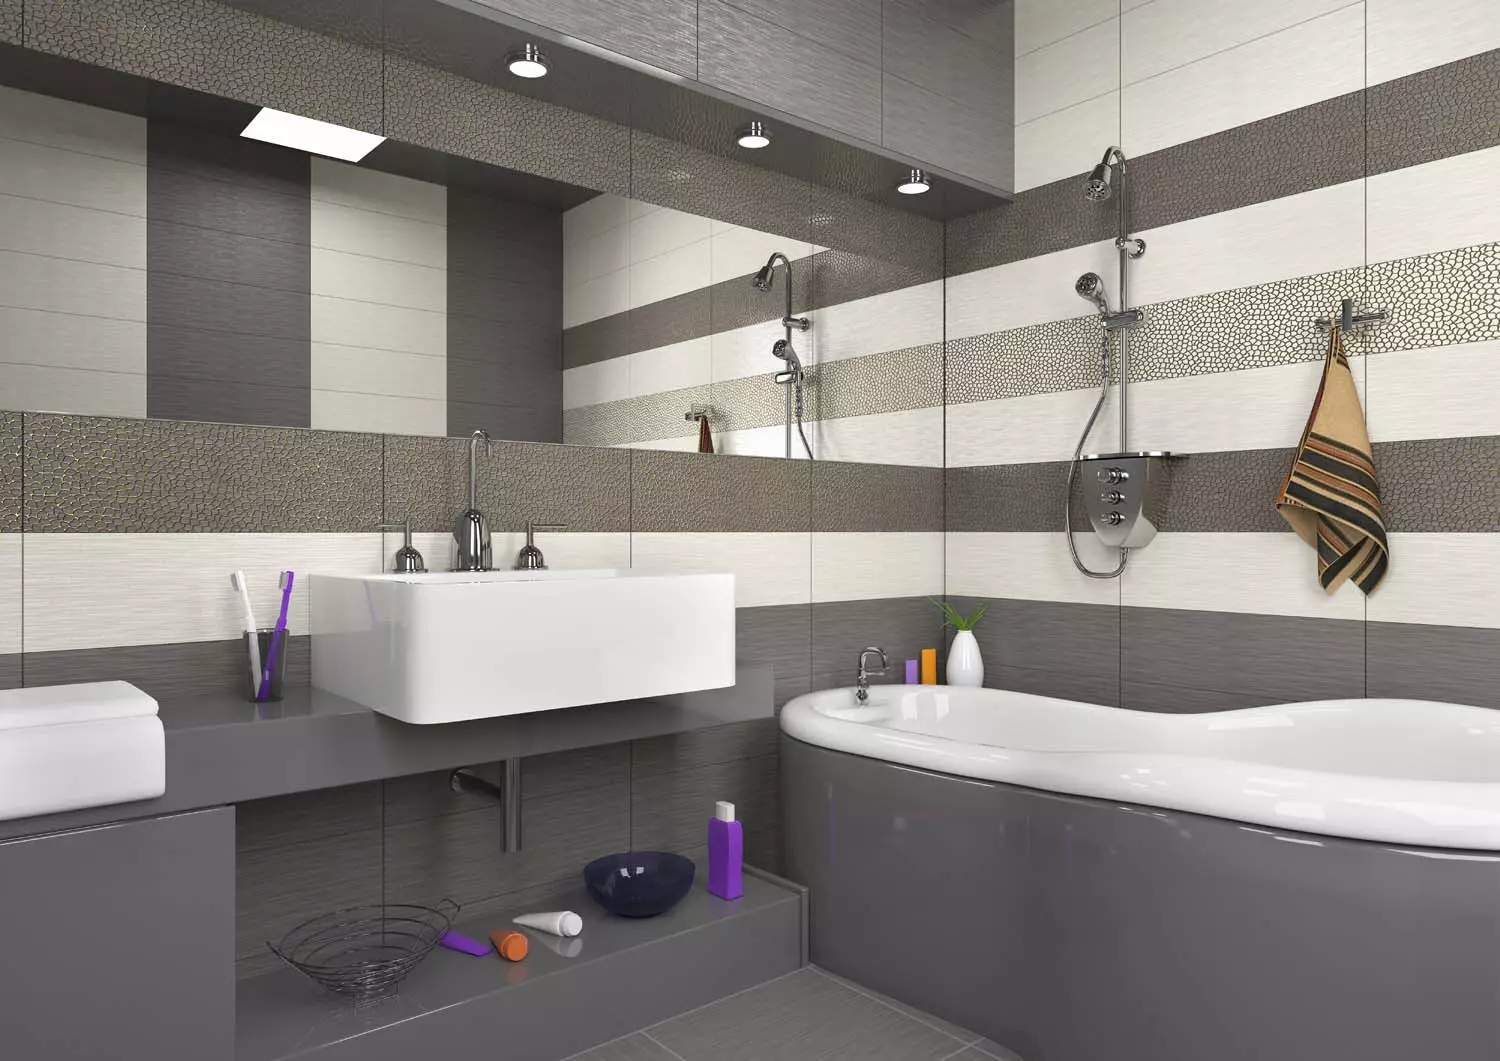 Ngói màu xám trong phòng tắm (44 ảnh): Gạch lát xám và xám nhạt trong phòng tắm. Gốm mờ và gạch khác màu xám 10126_41